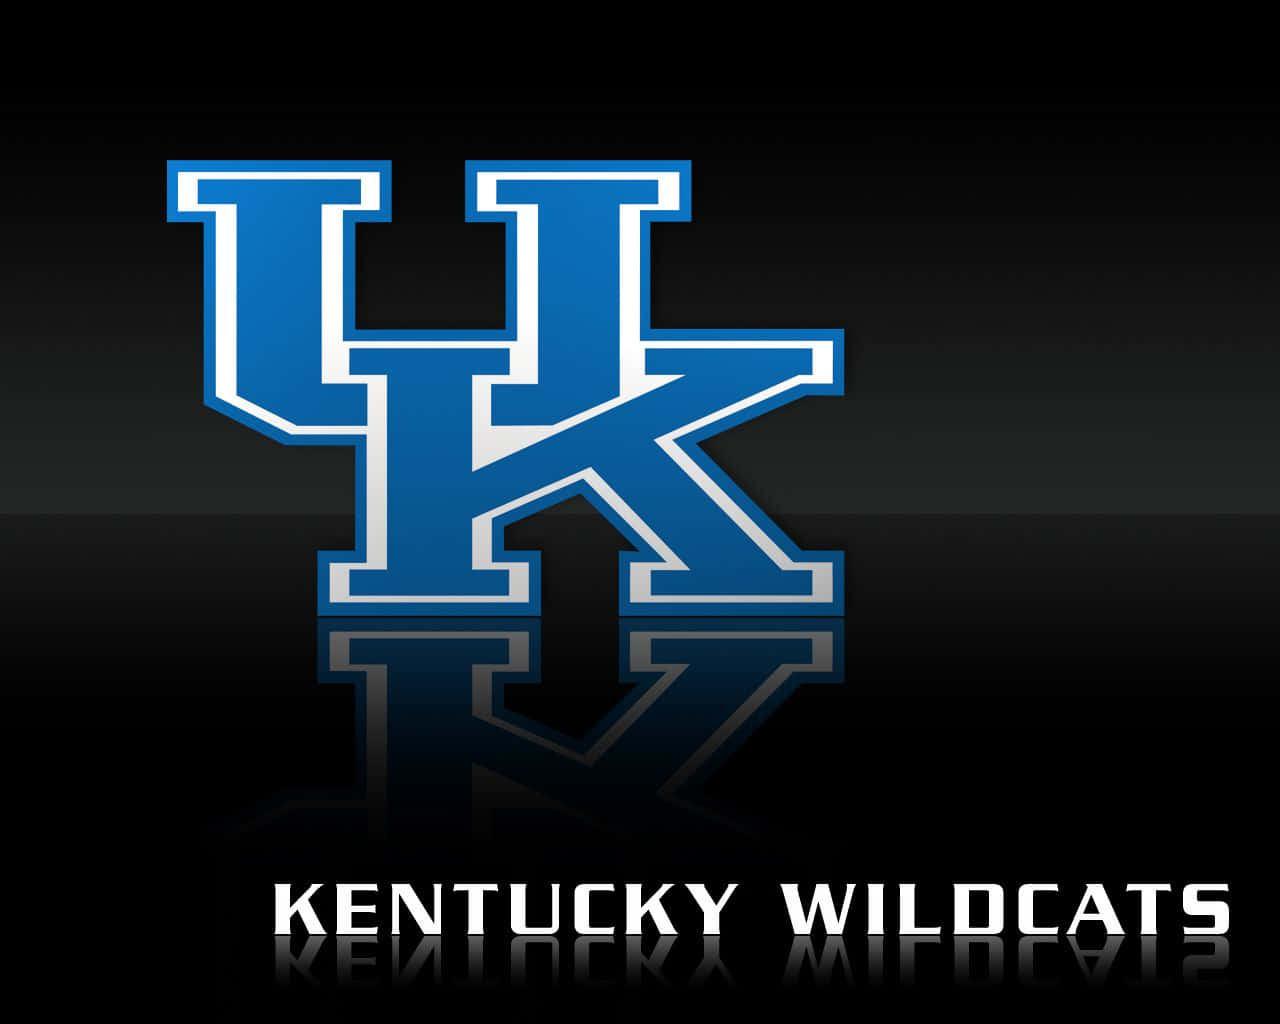 Universitetet Kentucky Wildcats tager overfladen i en spændende hjemmeoptræden. Wallpaper